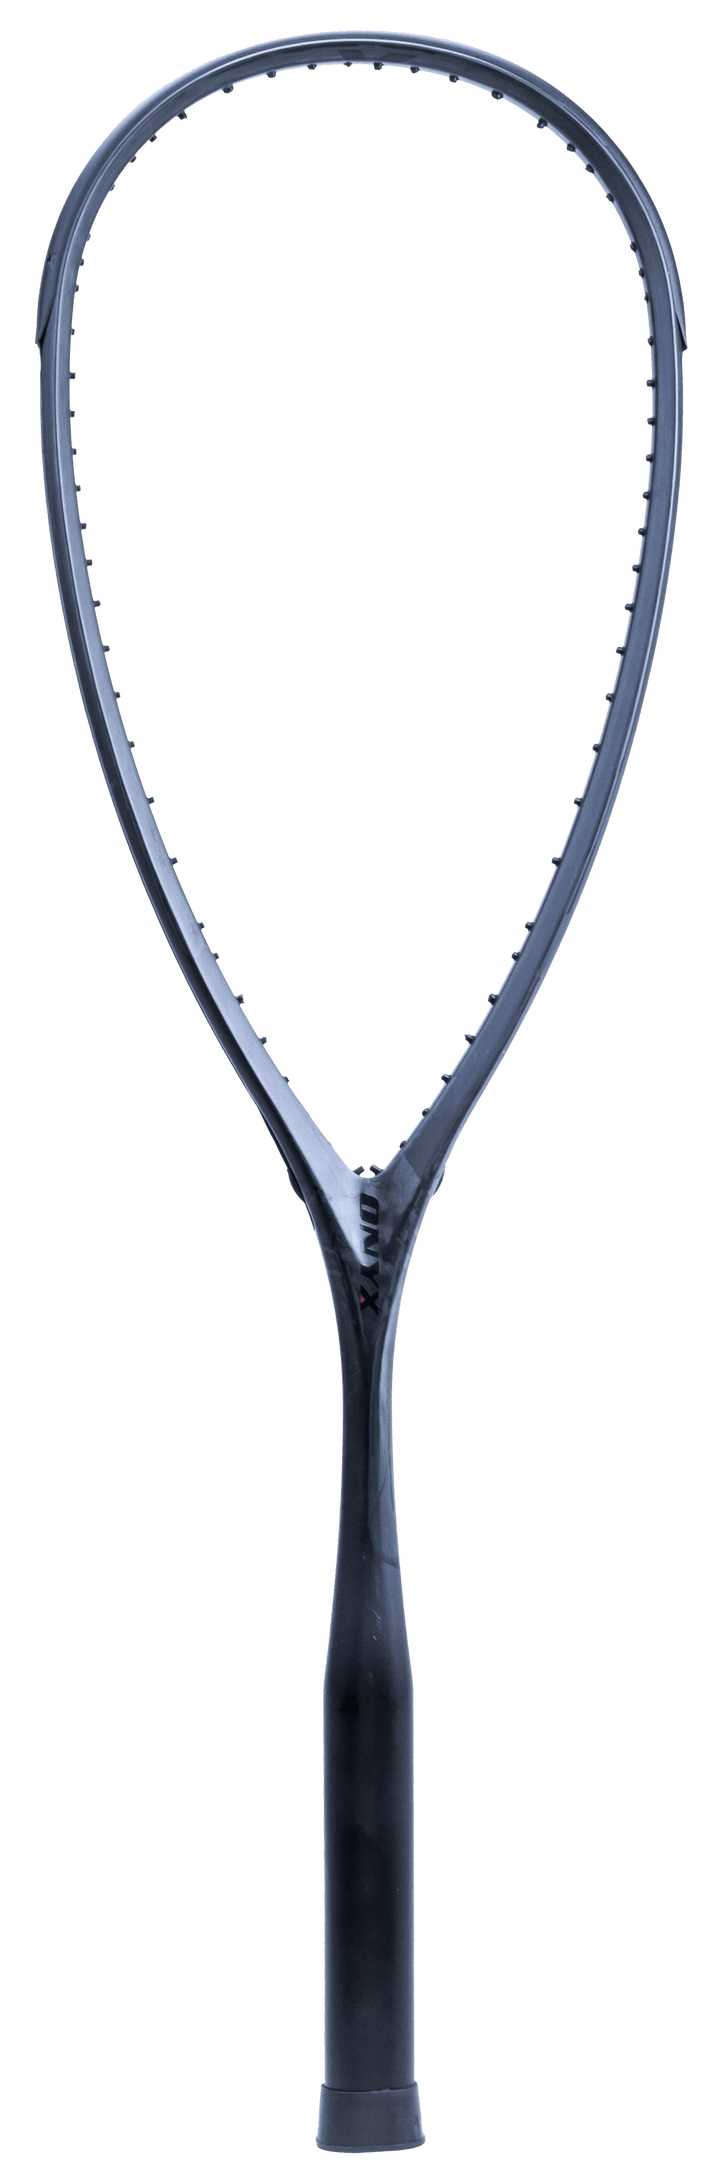 Xamsa Onyx Incognito Squash Racquet Unstrung - XamsaSquash